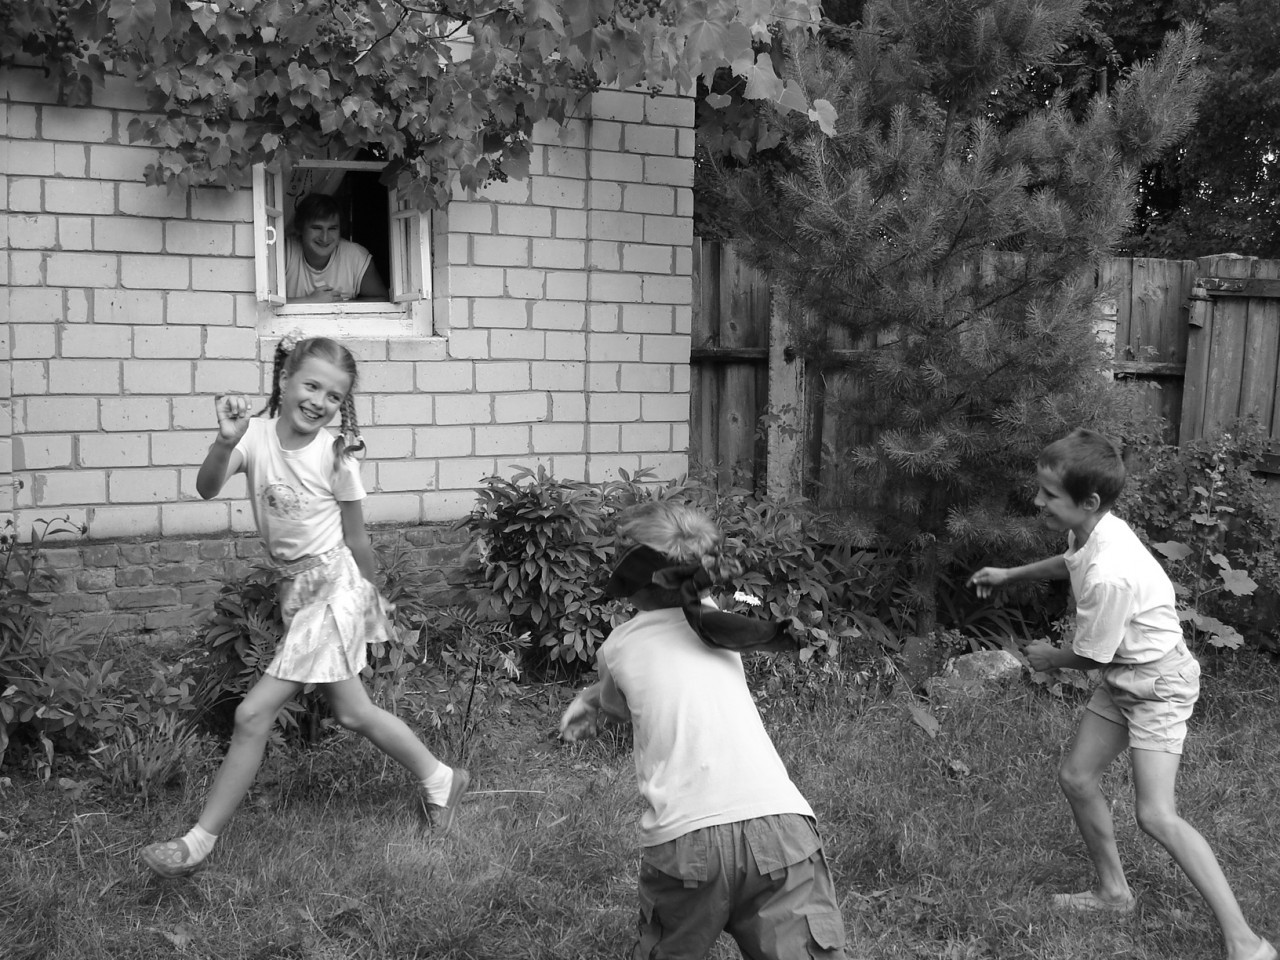 Мужики играют в салки. Игры детей СССР на улице. Игры в СССР для детей дворовые. Двор детства. Советские дети во дворе.